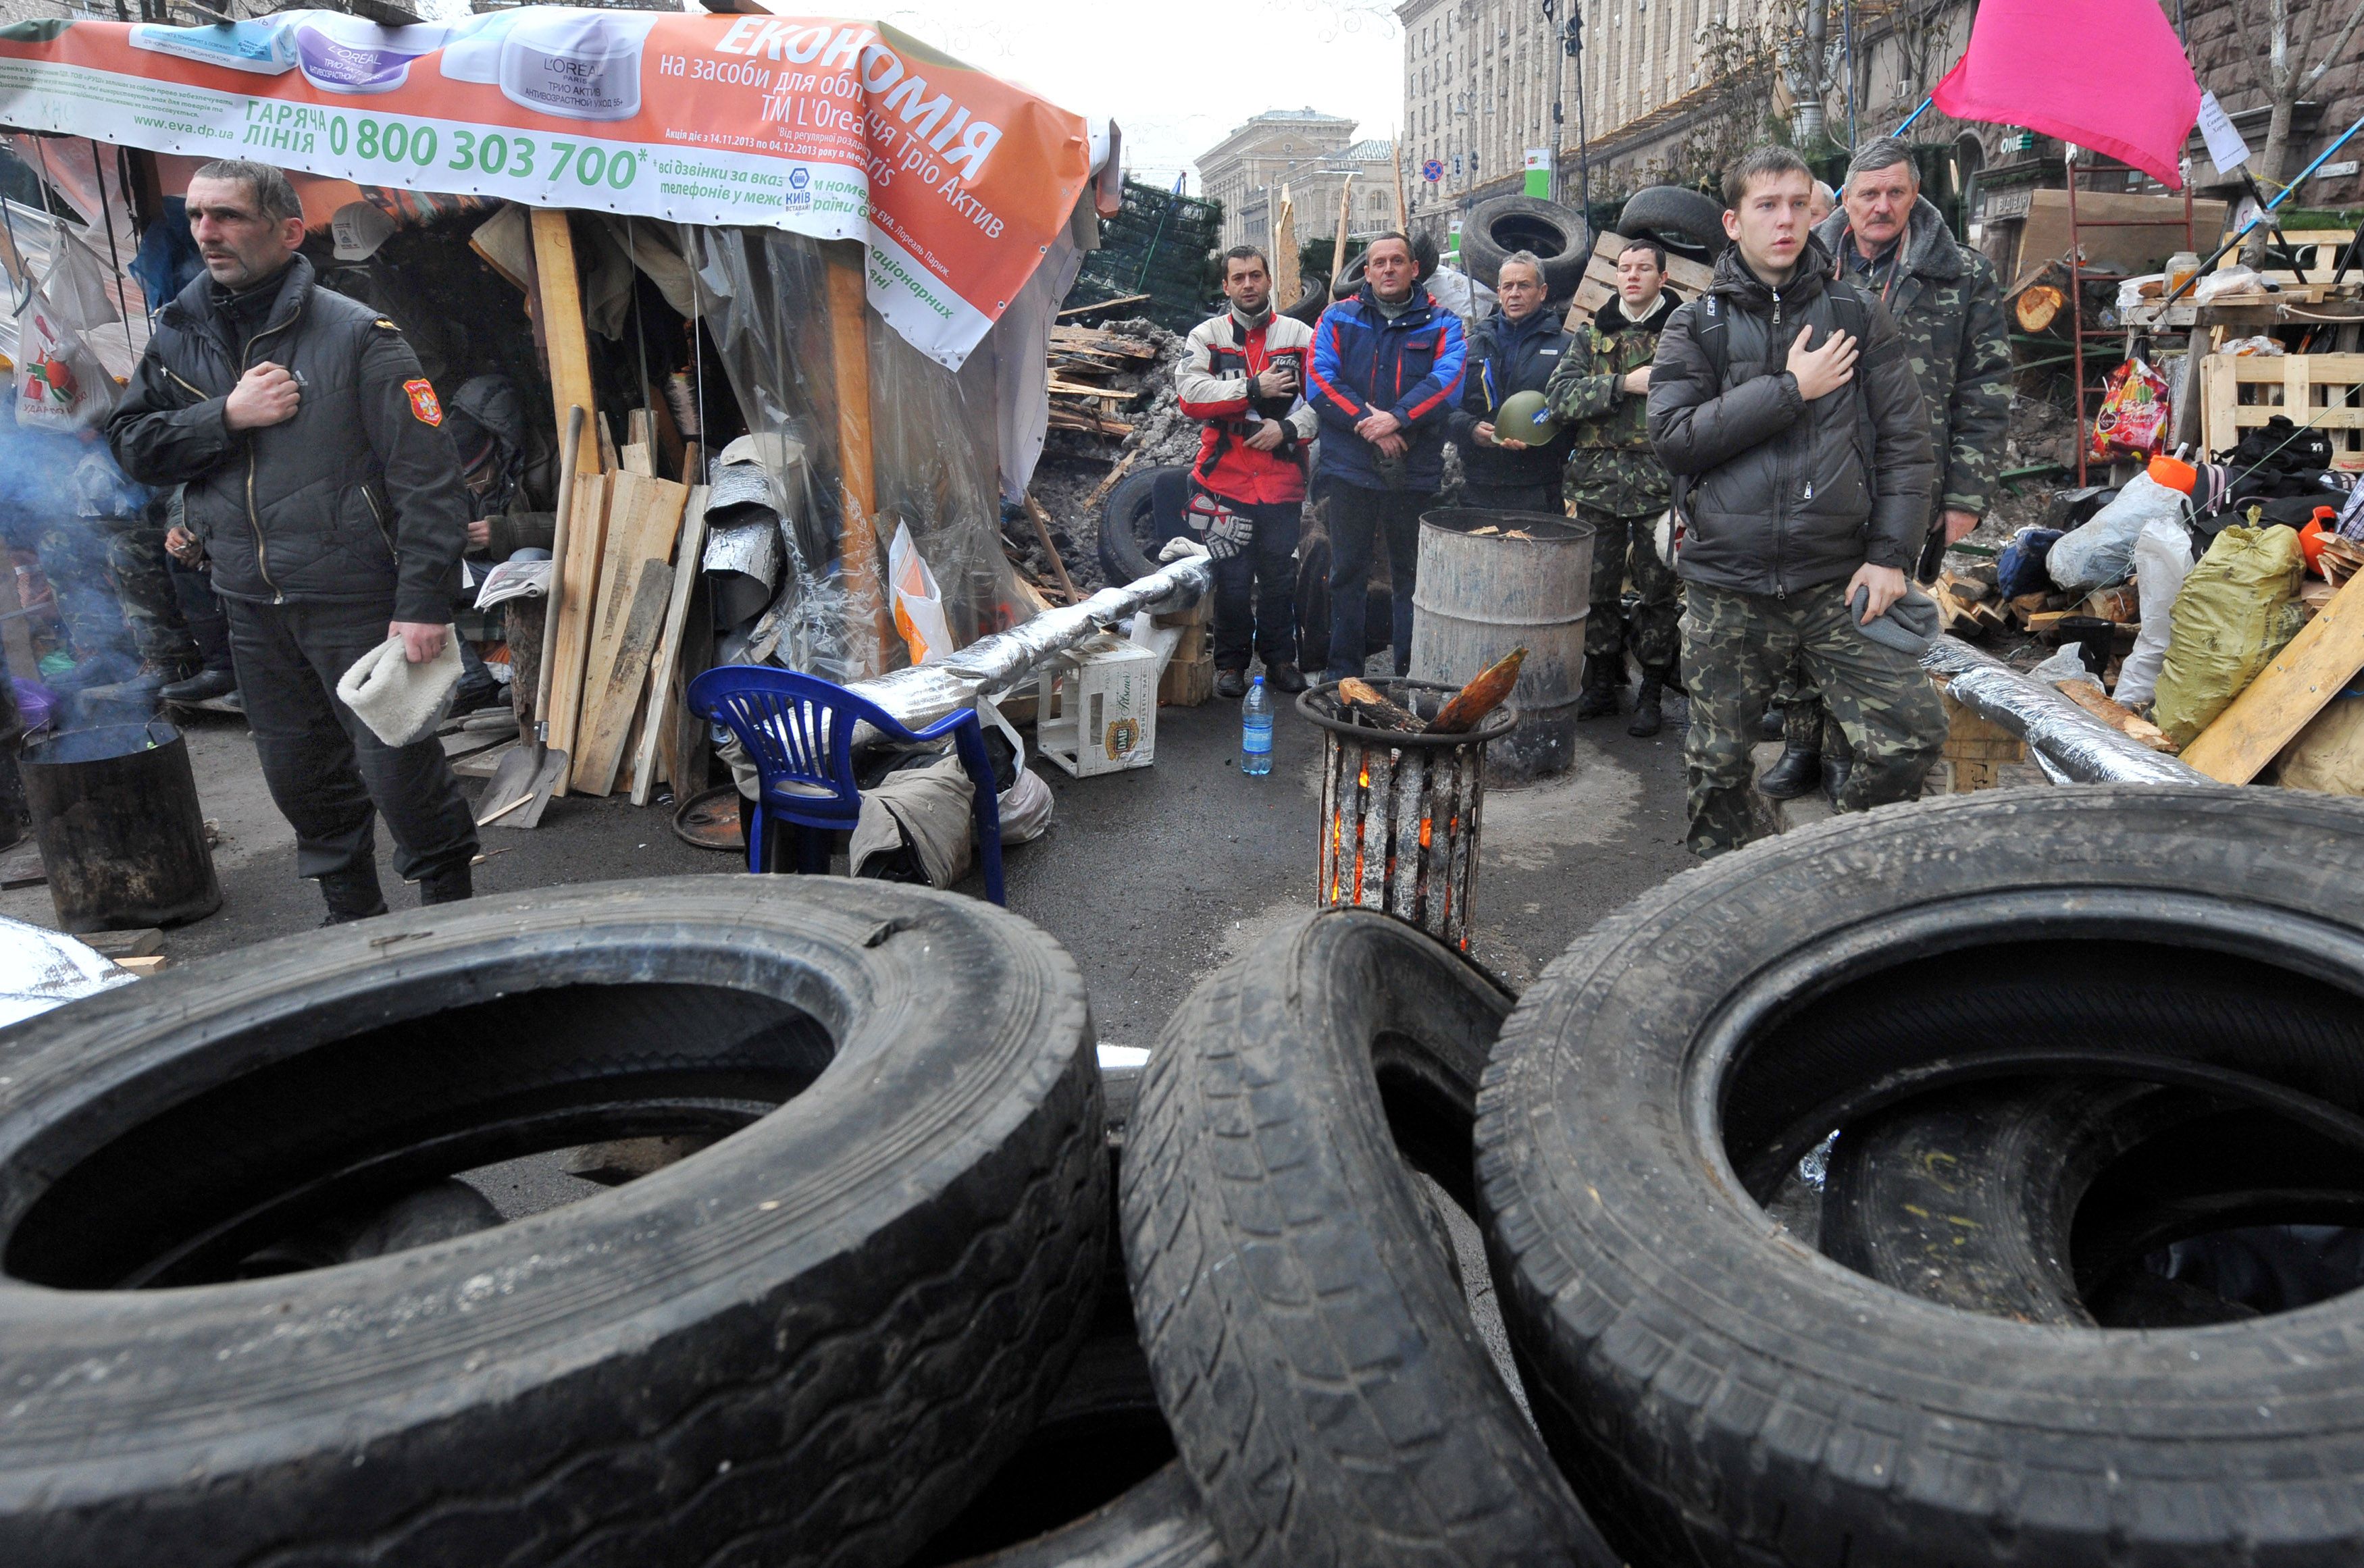 Euromaidan, revolutia care si-a luat numele de la un hashtag de pe internet. Momentele cheie ale celor 3 luni de revolte - Imaginea 7